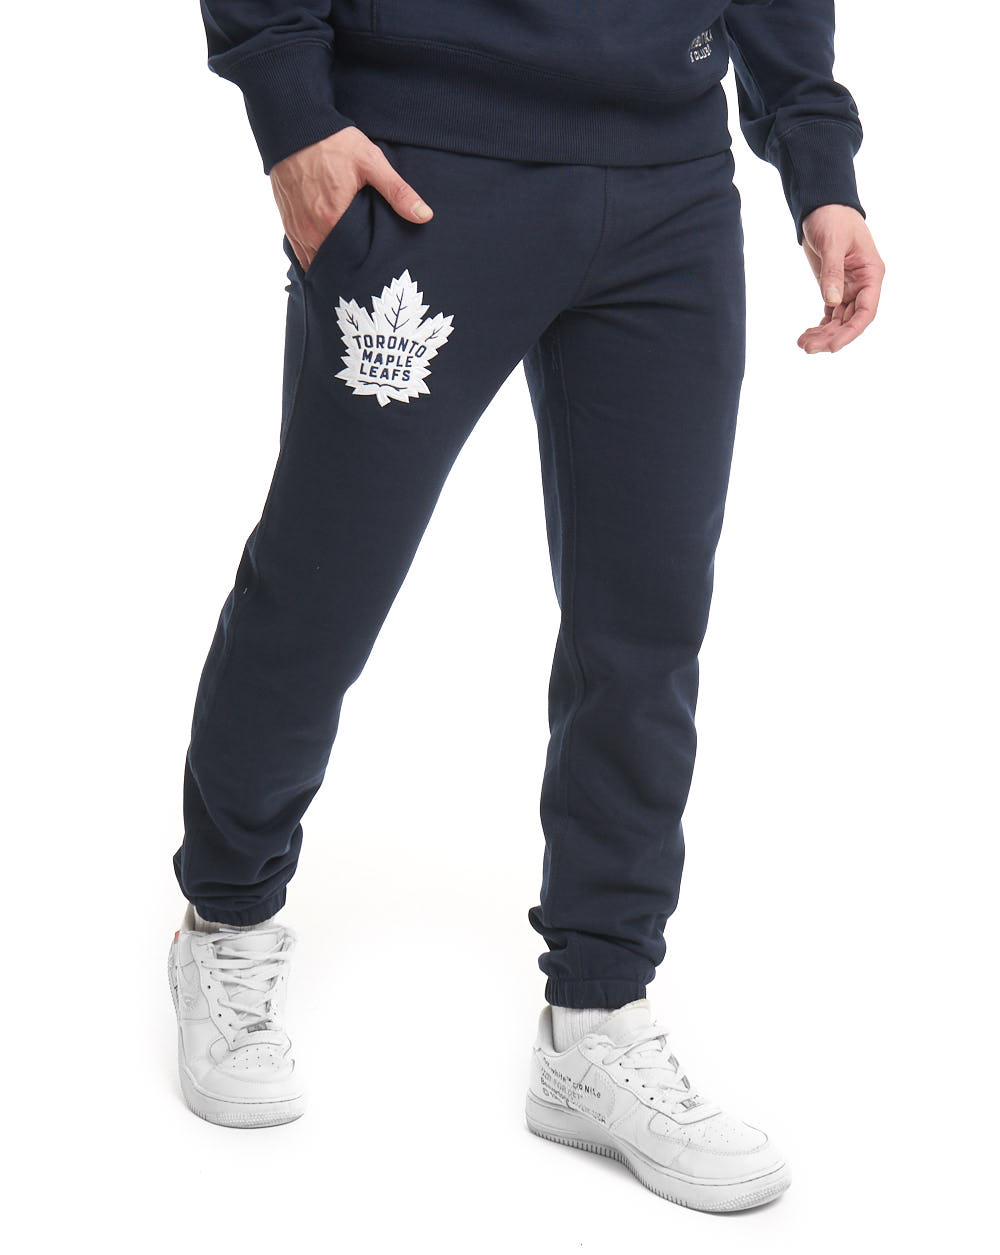 Спортивные брюки мужские Atributika&Club Торонто Мейпл Лифс 46200 синие 2XL